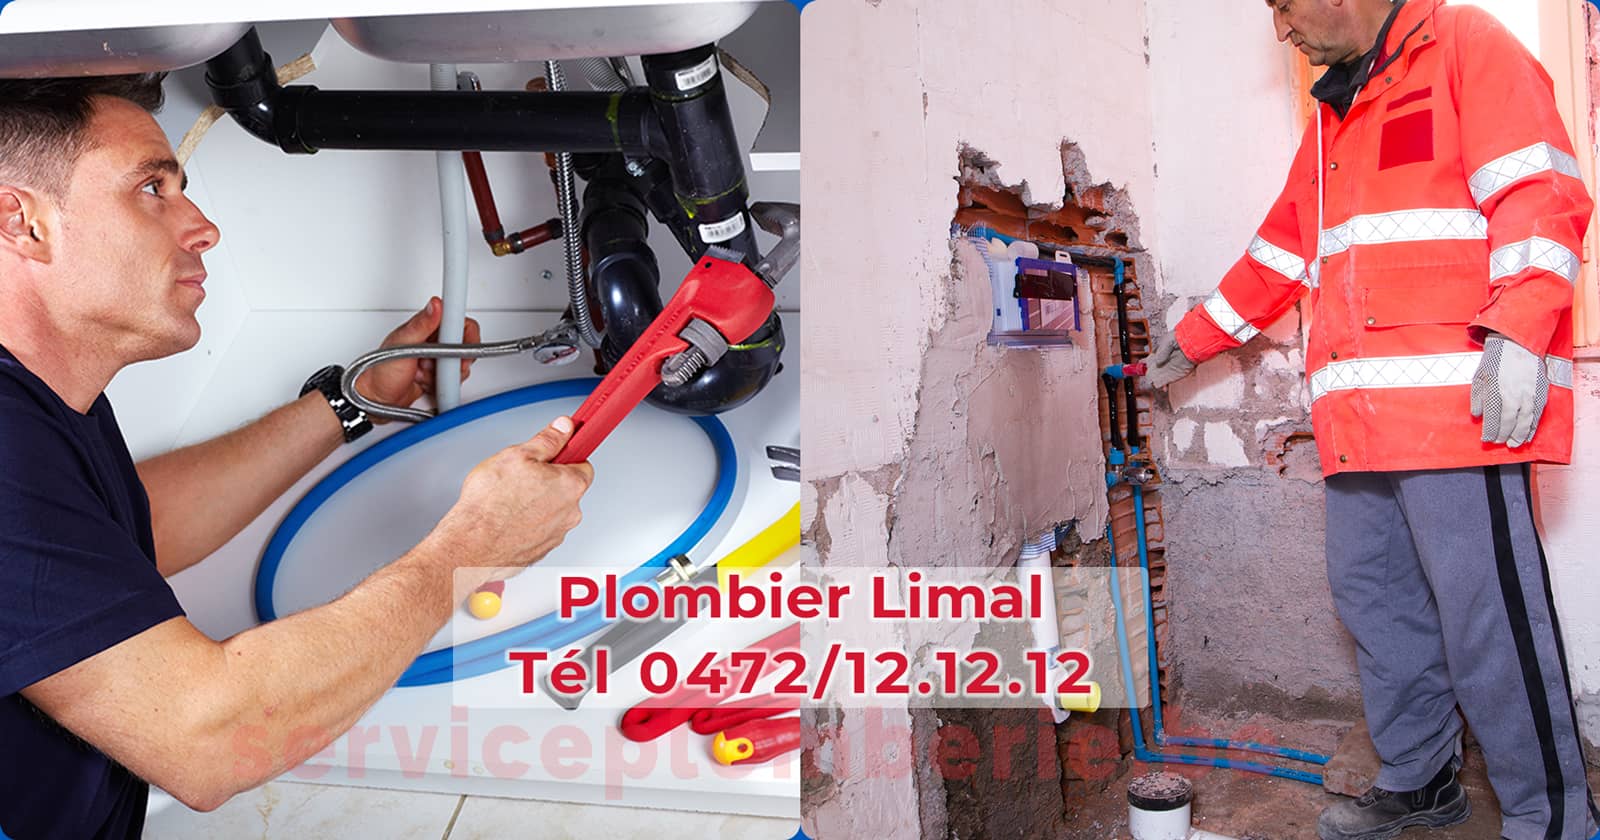 Plombier Limal Agréé Professionnel Service Plomberie Tél 0472/12.12.12